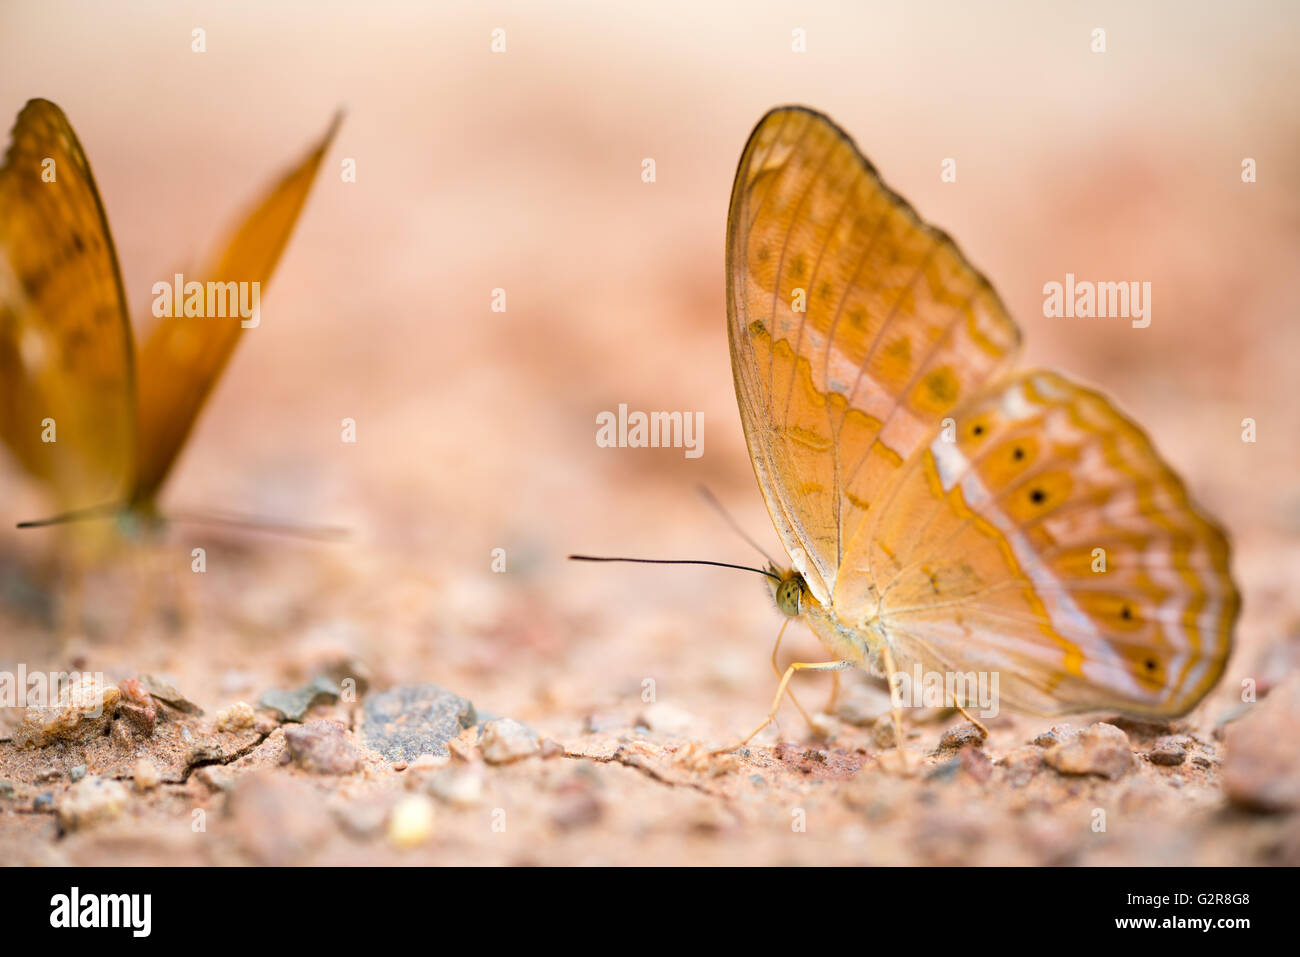 Farfalla marrone sul terreno, macro close up, con profondità di campo e la messa a fuoco all'occhio, con spazio di copia Foto Stock